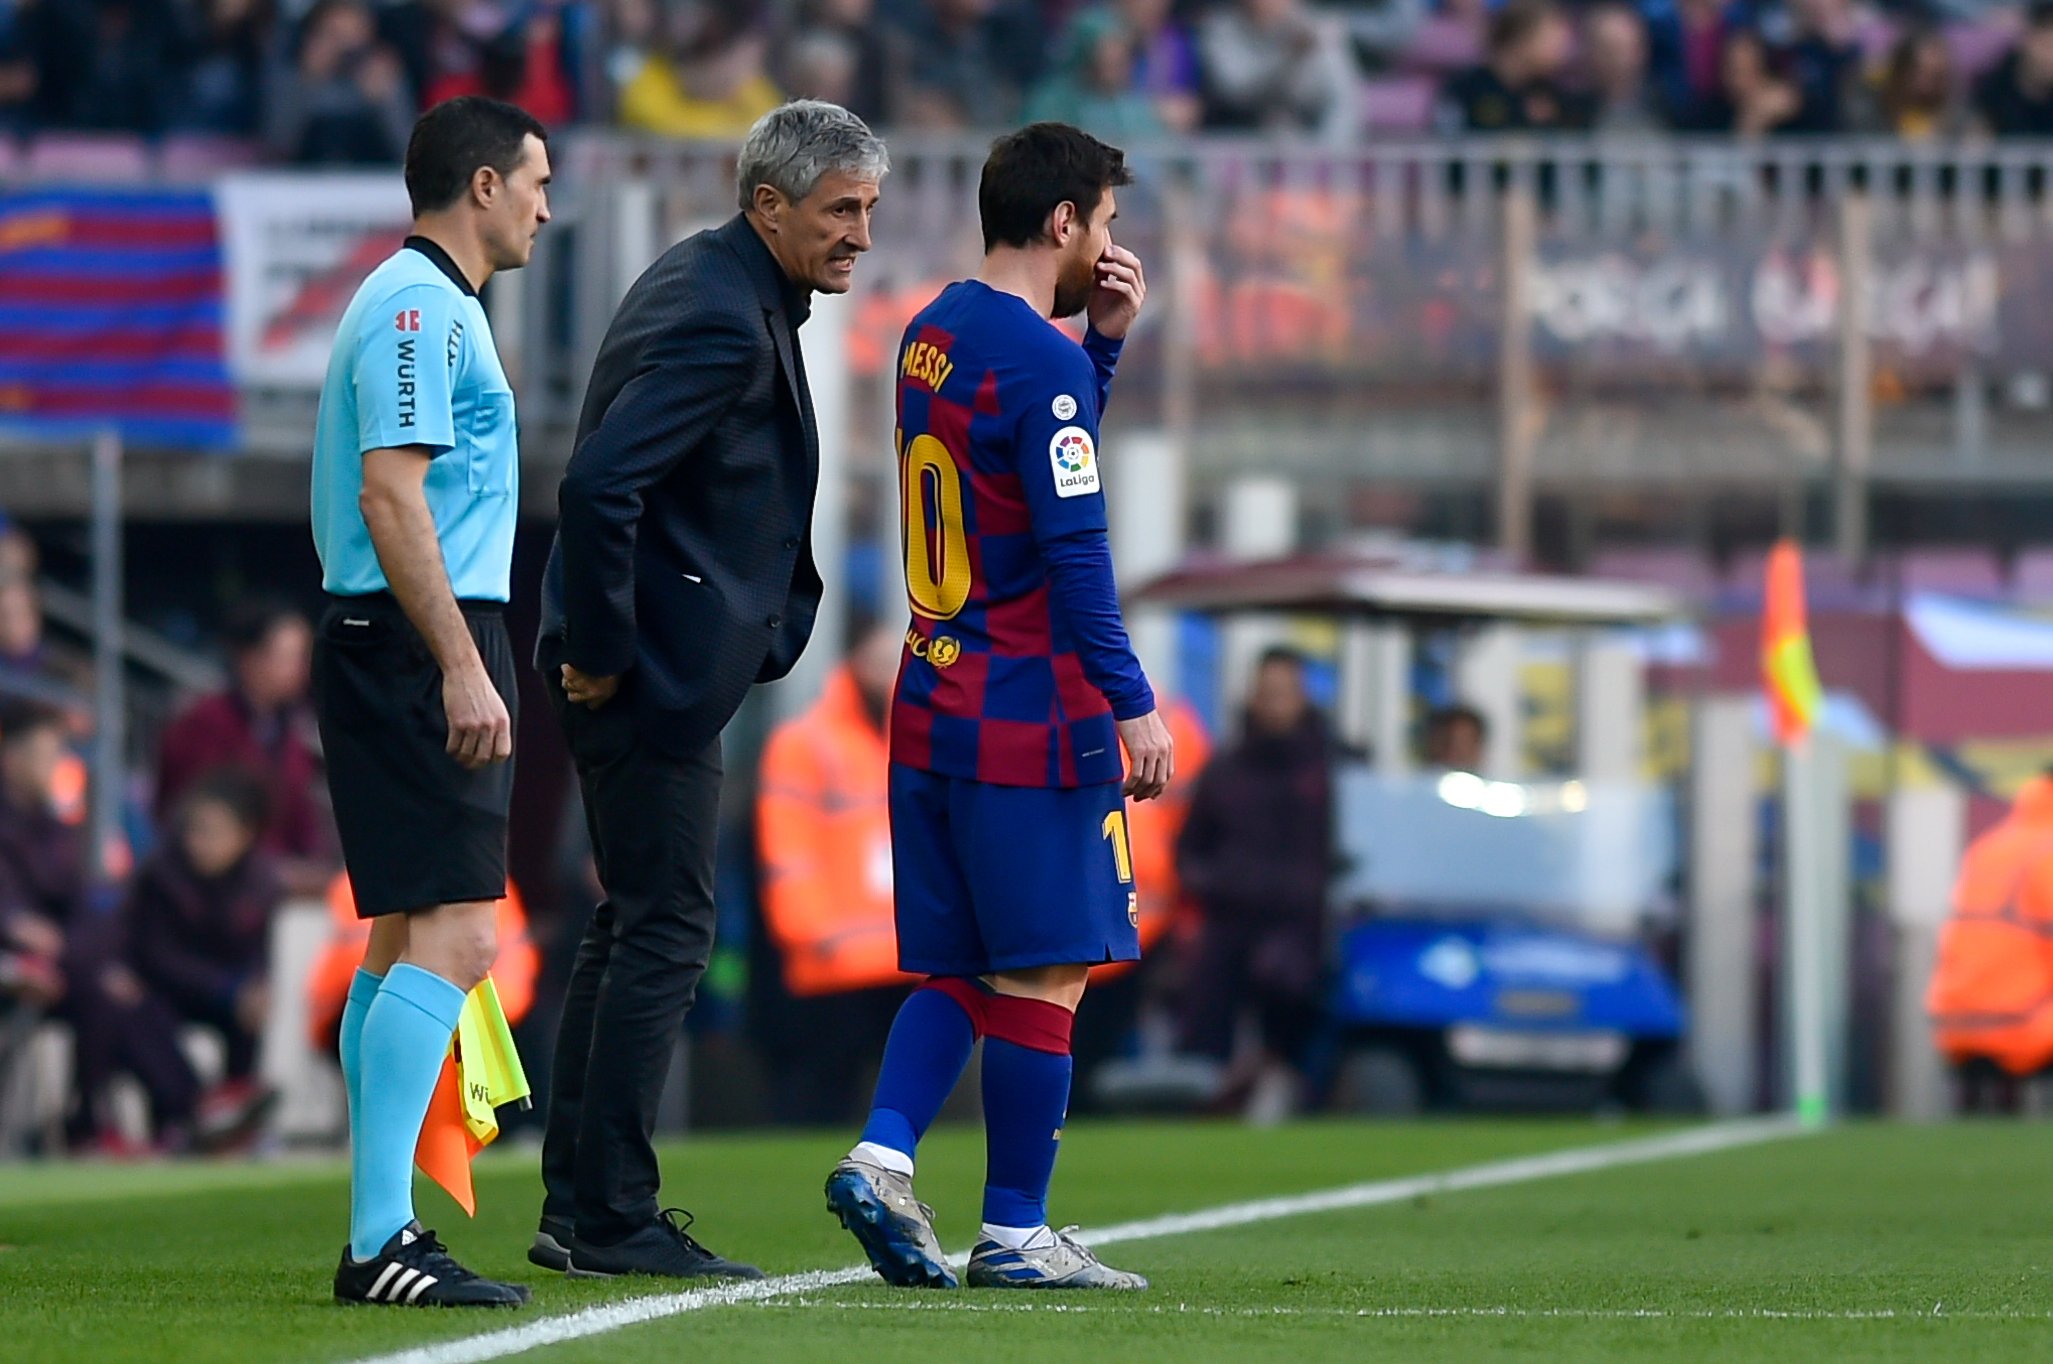 D'això van parlar en la reunió Messi-Setién per resoldre els problemes del Barça